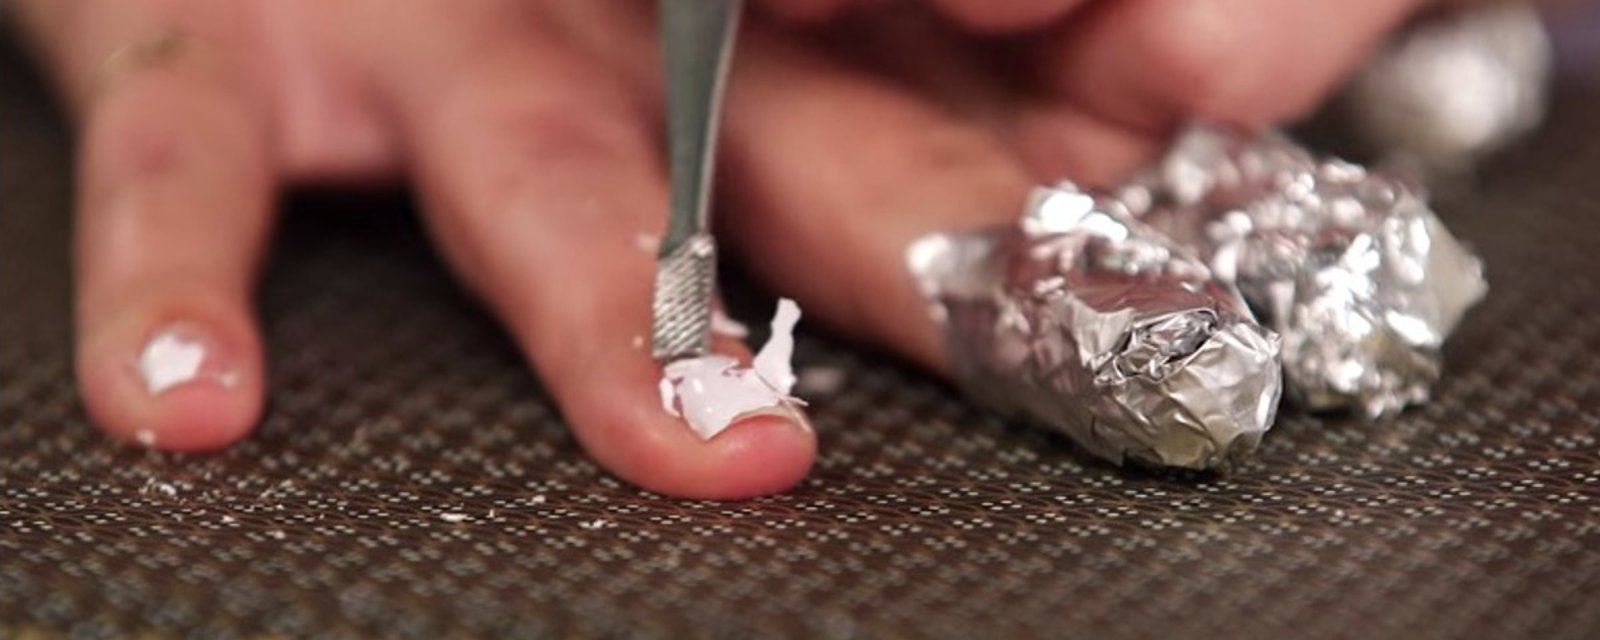 Voici comment retirer une manucure en gel sans abîmer vos ongles